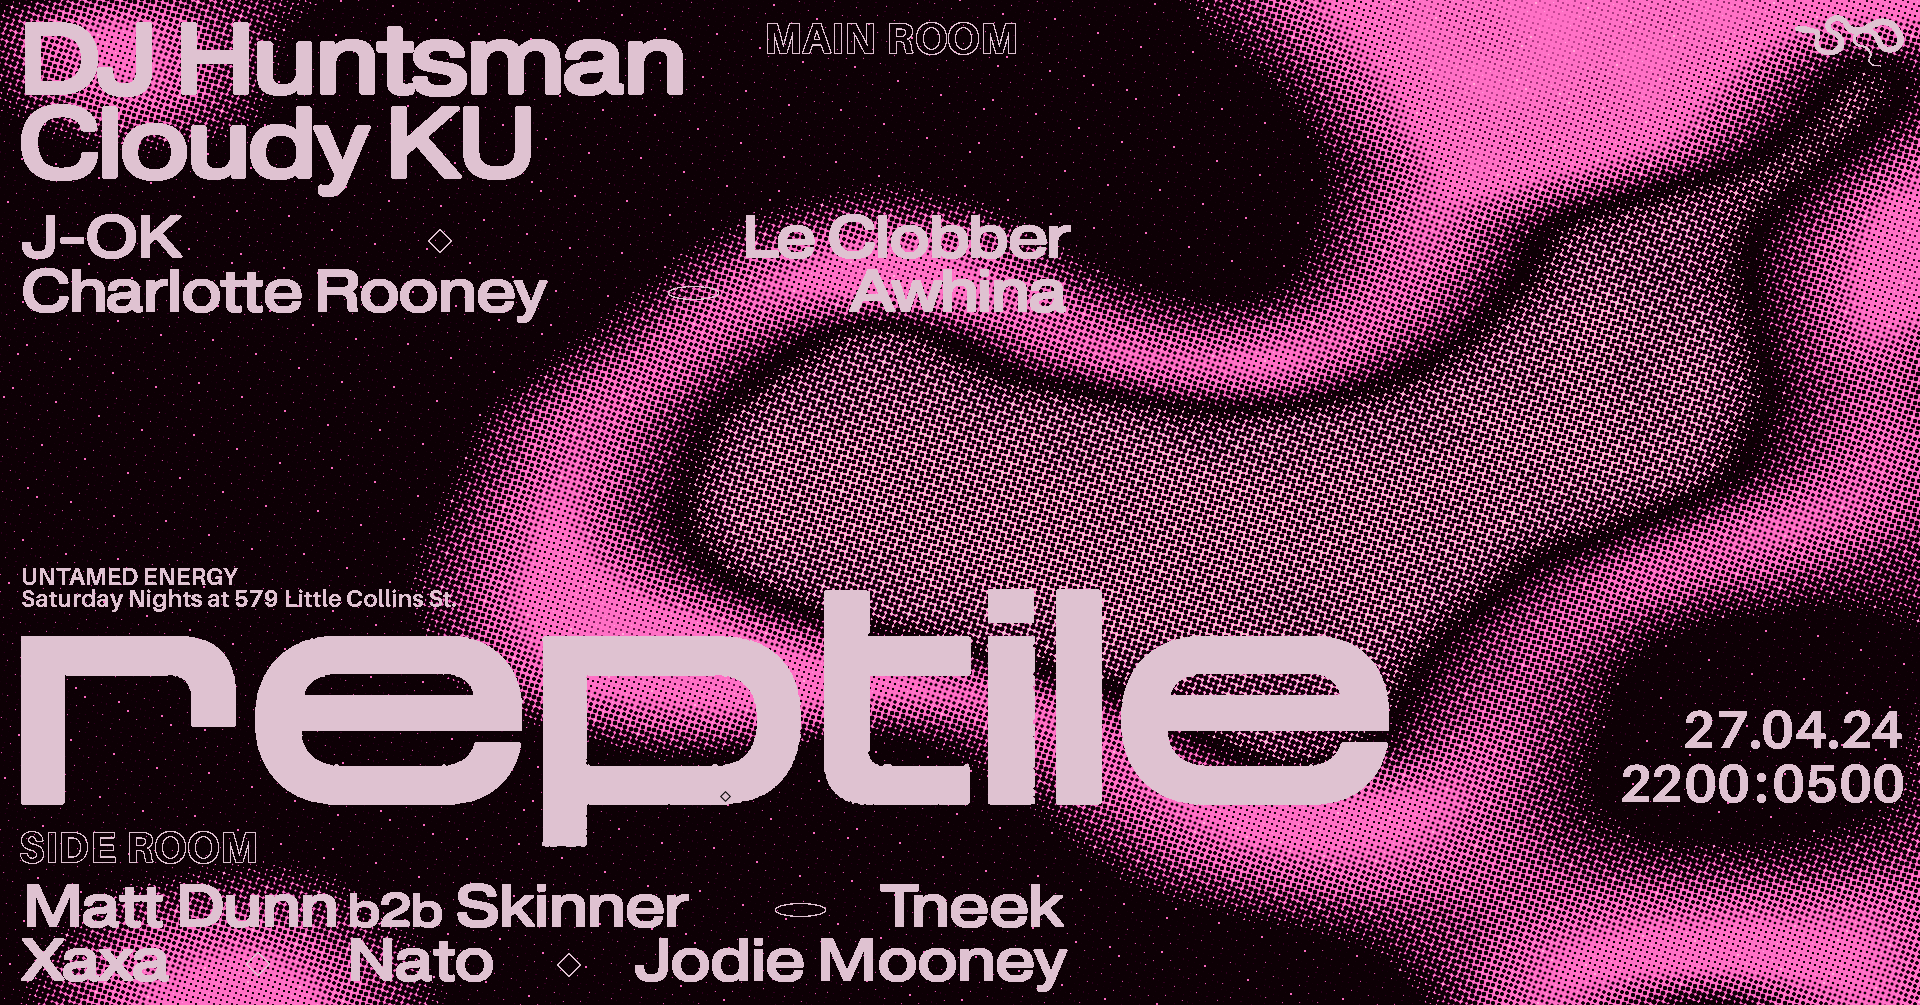 Reptile 029 - DJ Huntsman/Suki, Cloudy KU - Página frontal